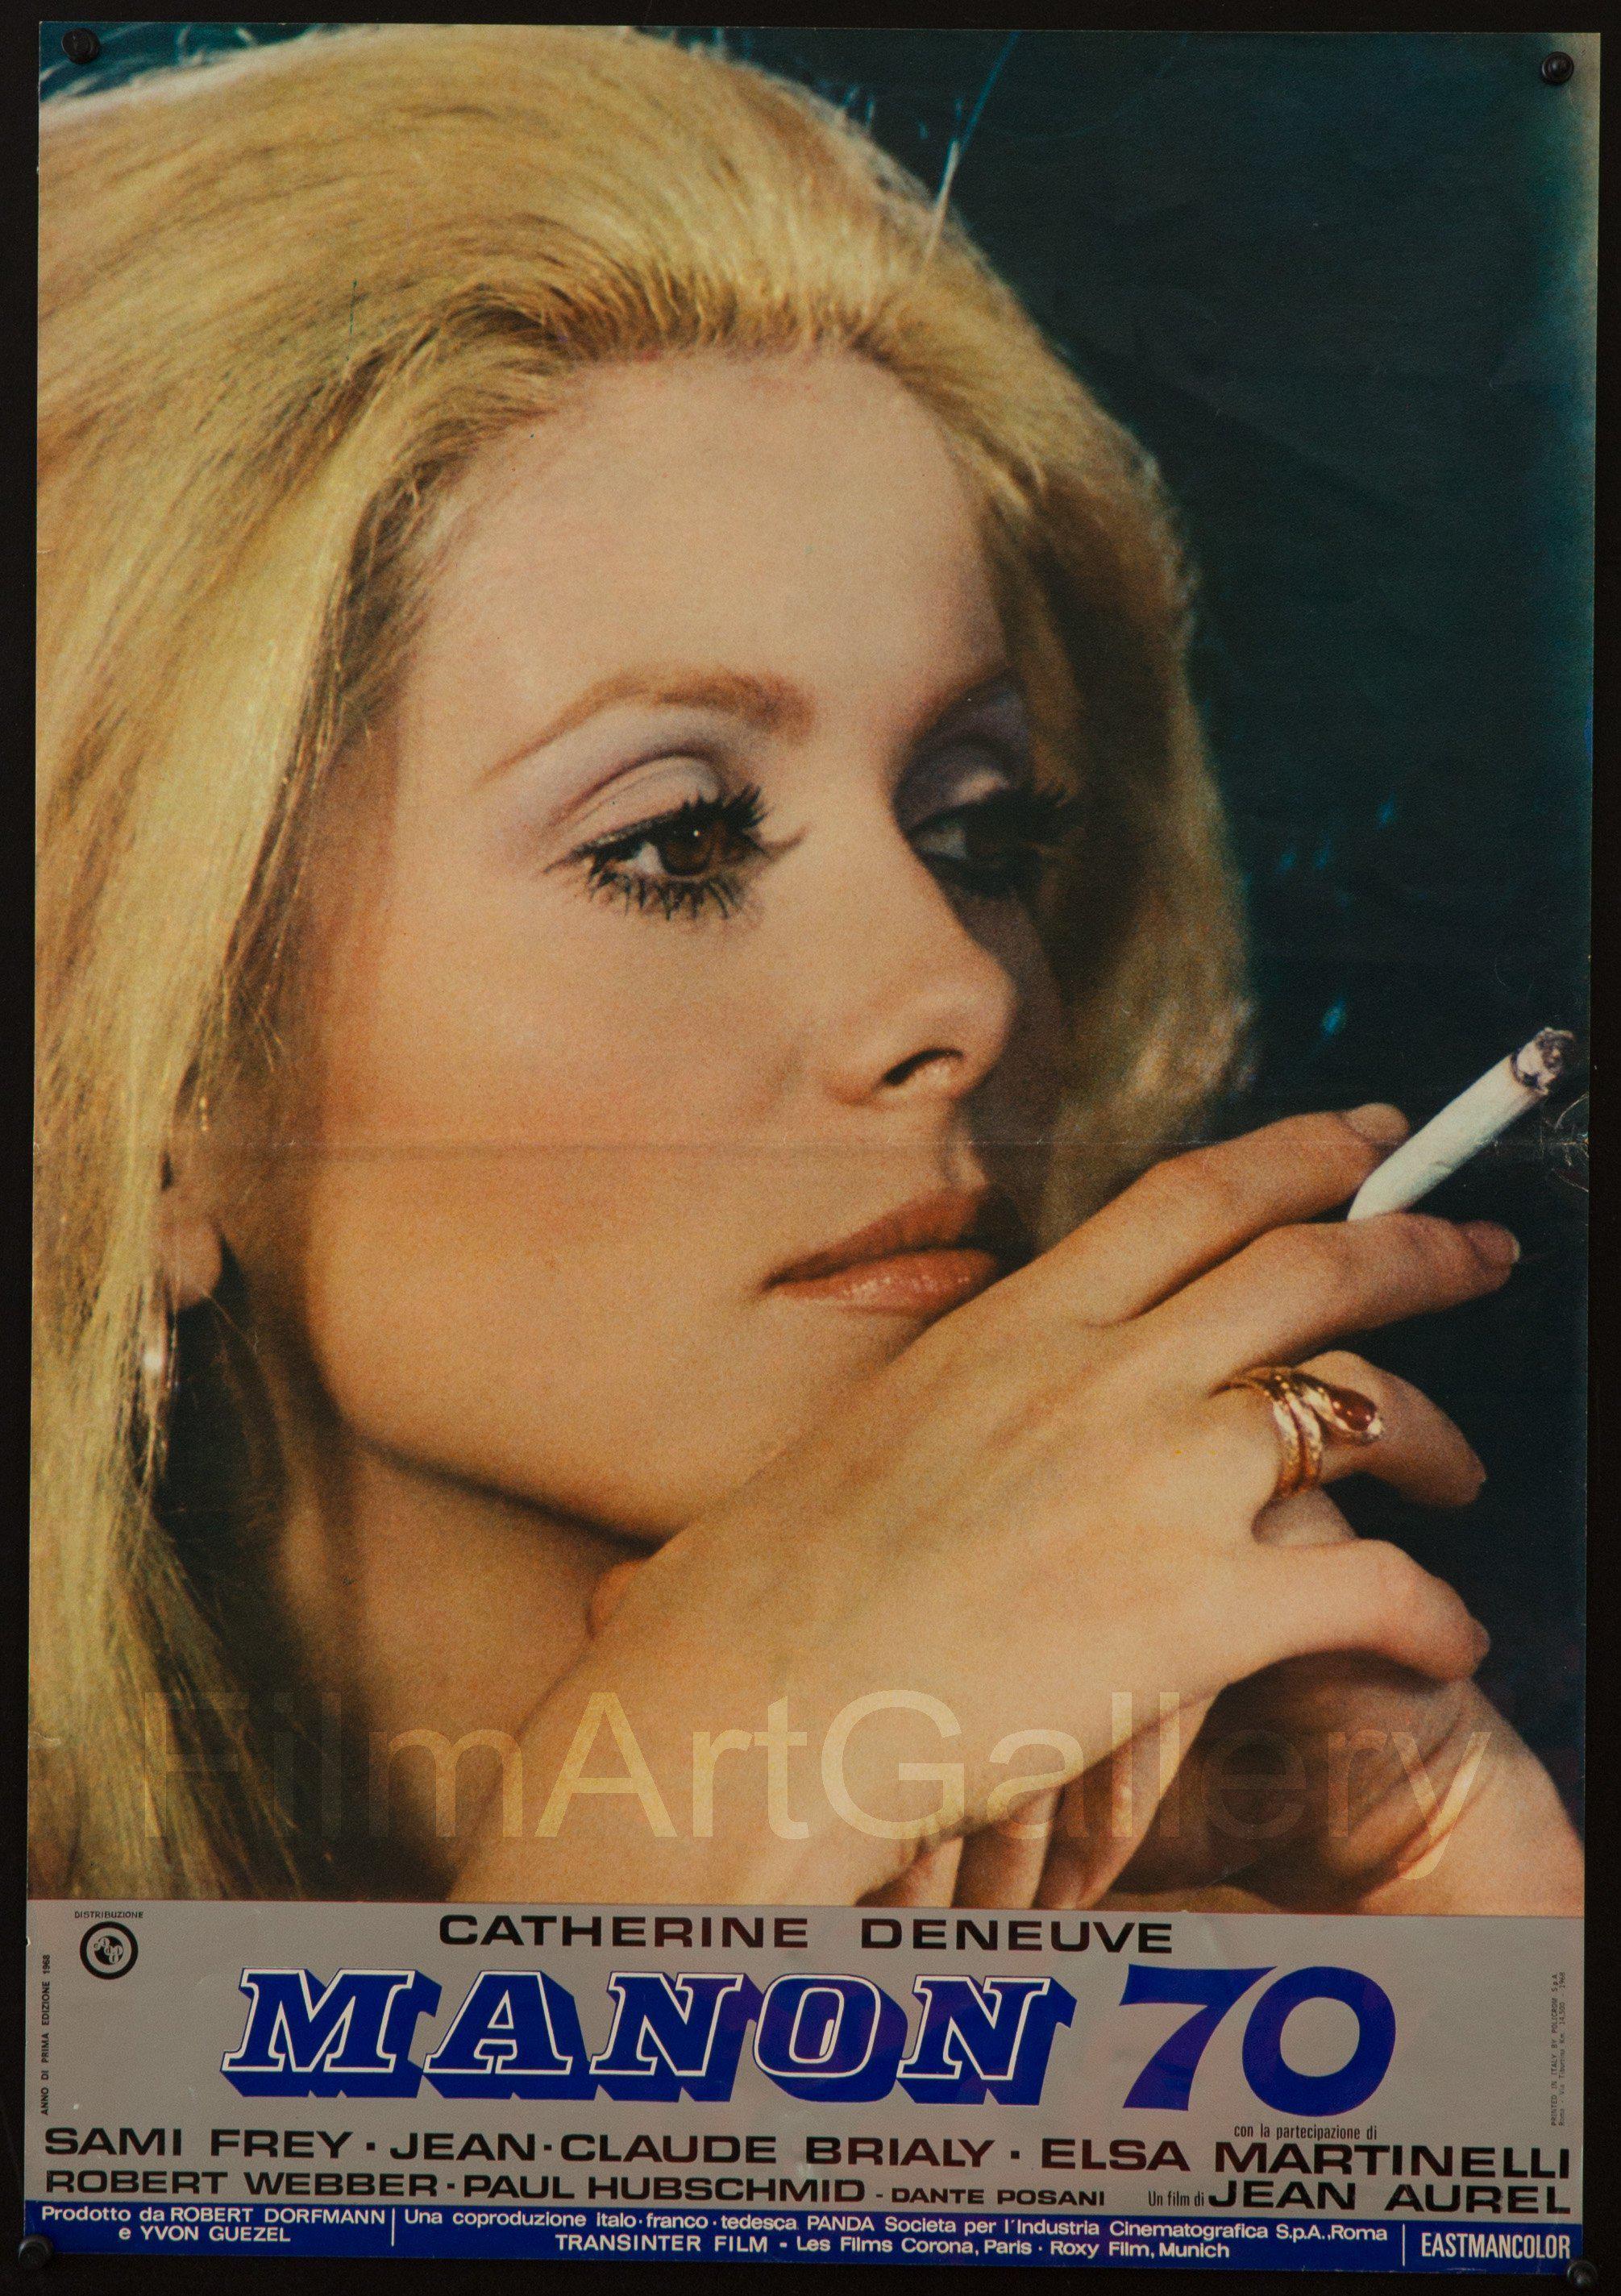 Vintage poster – Parfumerie Manon – Galerie 1 2 3